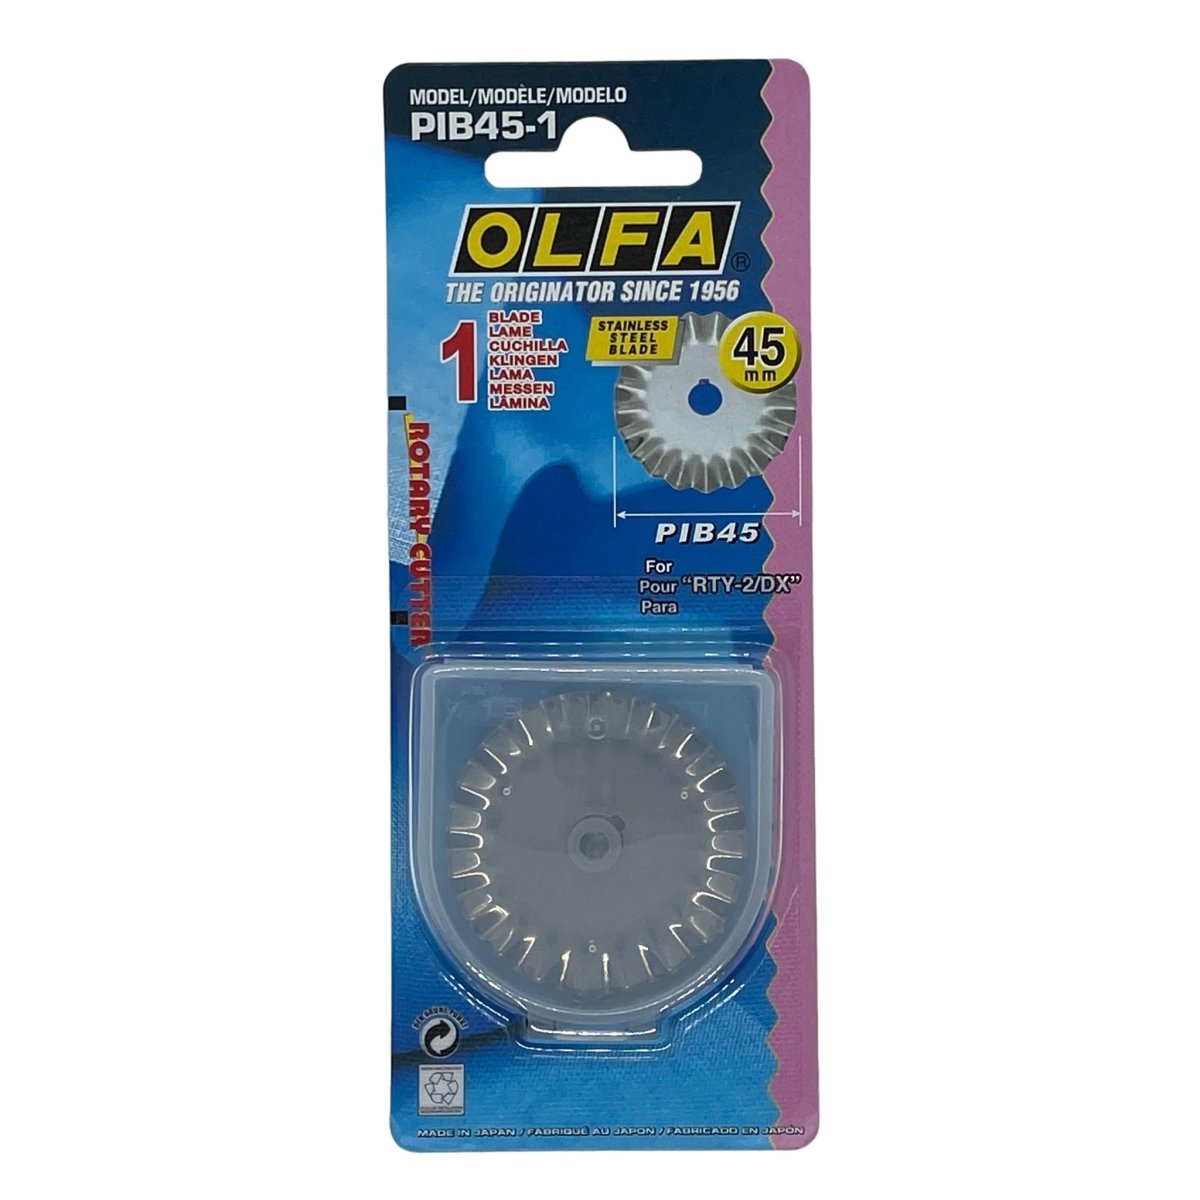 45mm Cutter Olfa Rty 2, Olfa Rotary Cutters, Knife Olfa Rotary